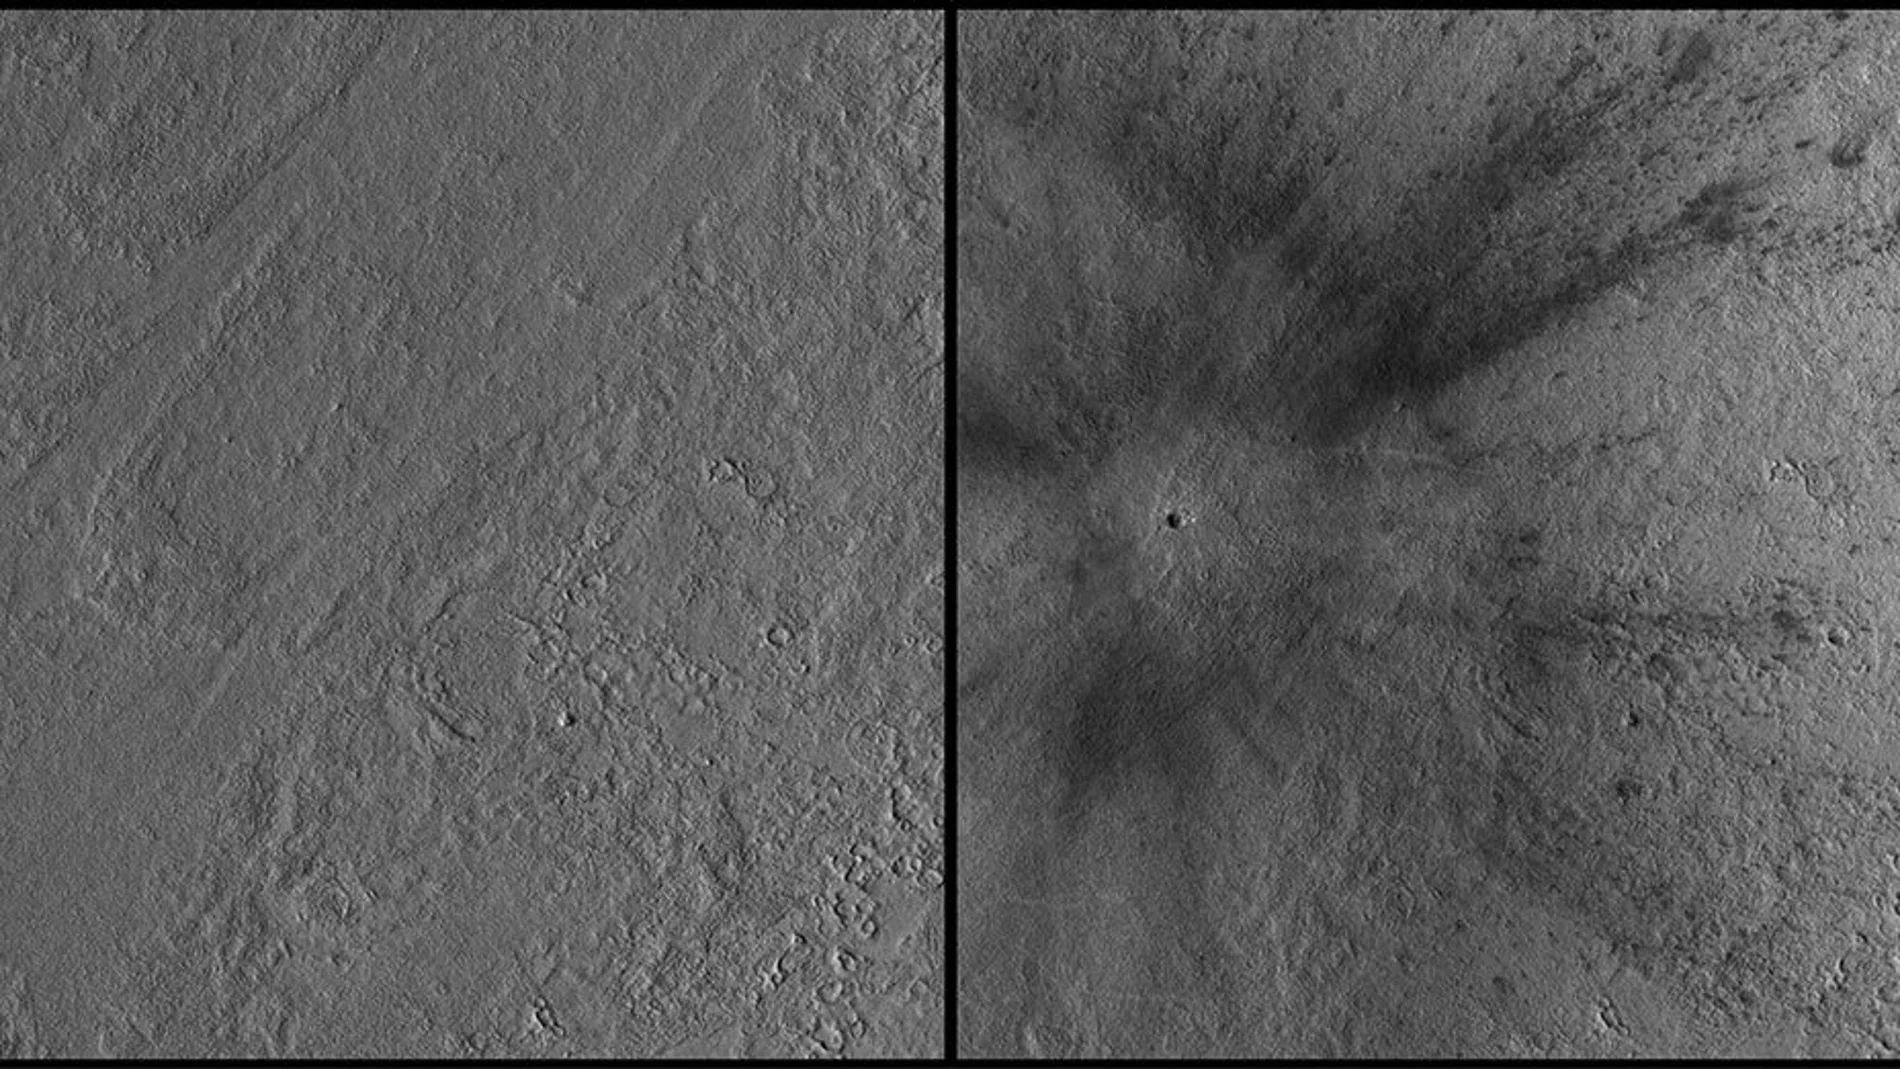 Las imágenes muestran el antes y después del impacto de un meteorito